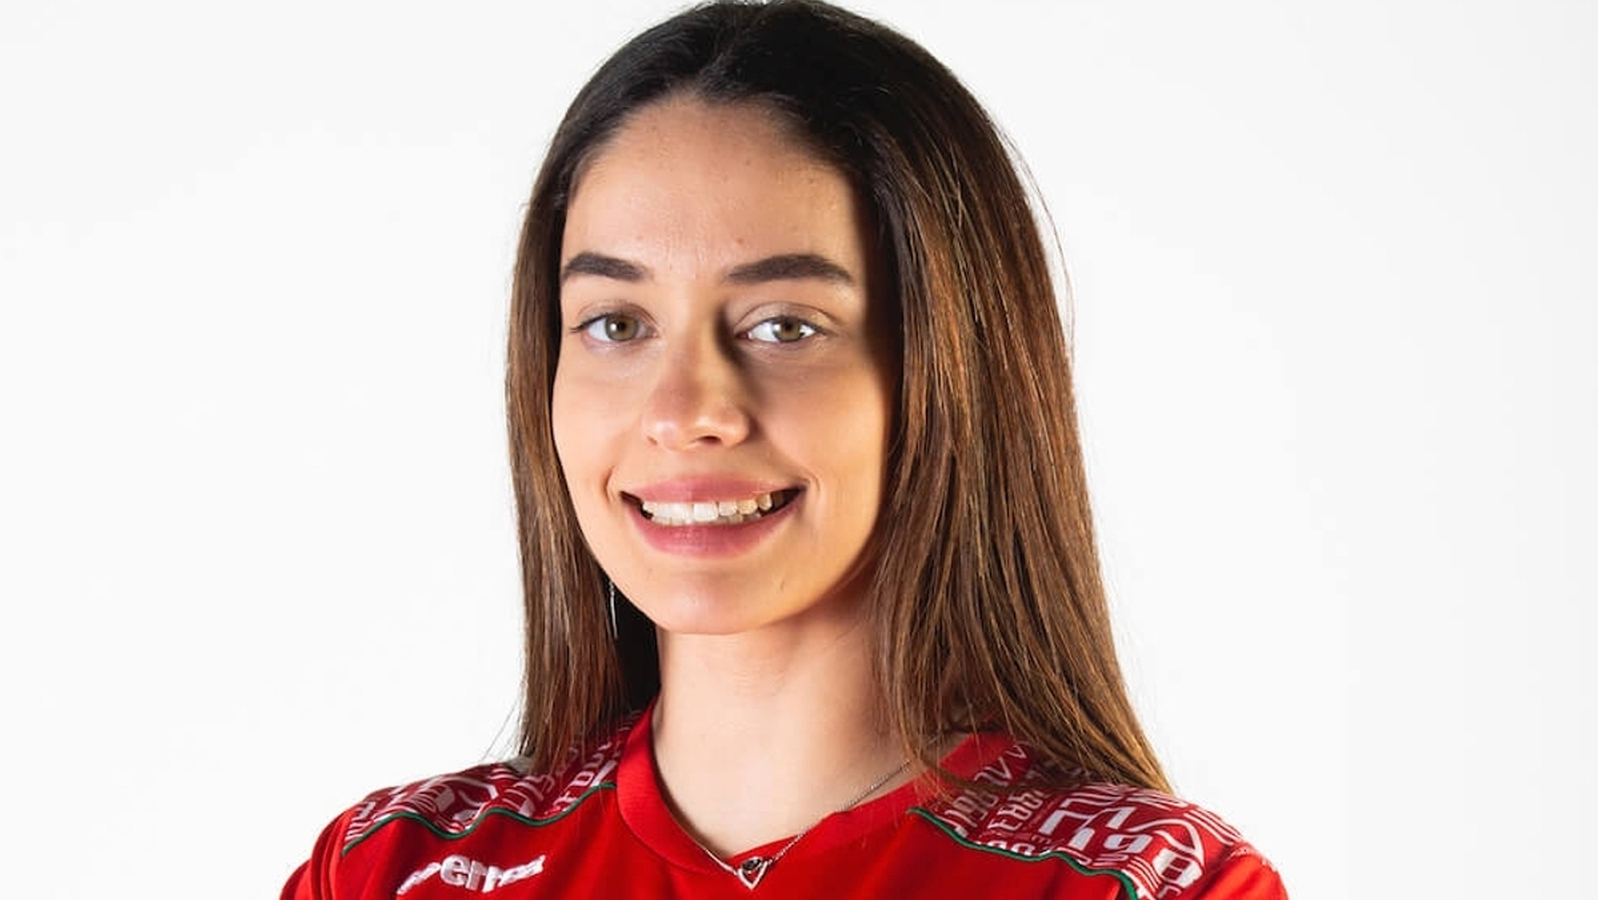 La española Marta García correrá para PREMA Racing y completa la parrilla de la F1 Academy